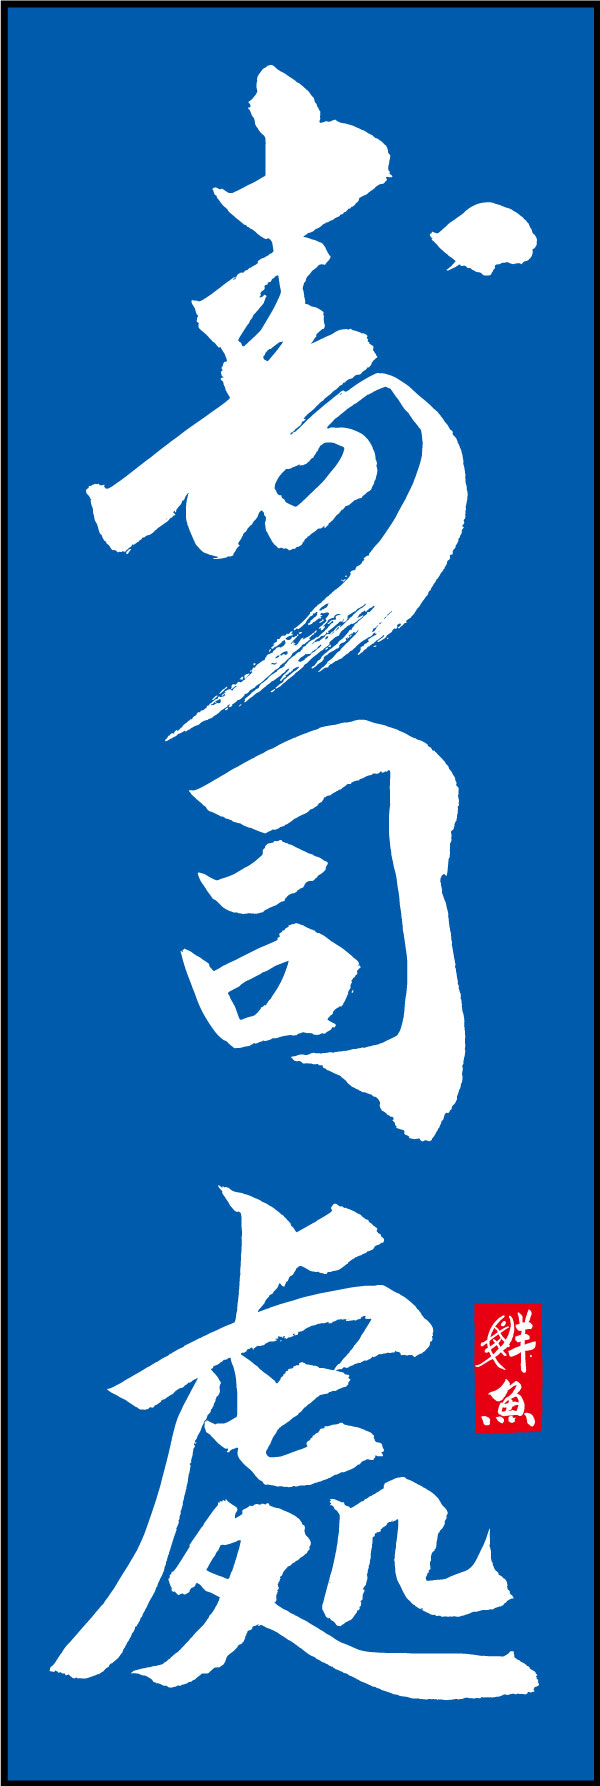 寿司處 144_03 「寿司處」ののぼりです。江戸文字職人 加藤木大介氏による、手書きの筆文字です。完全書き下ろし、唯一無二ののぼりは当店だけのオリジナル商品です。（Y.M）